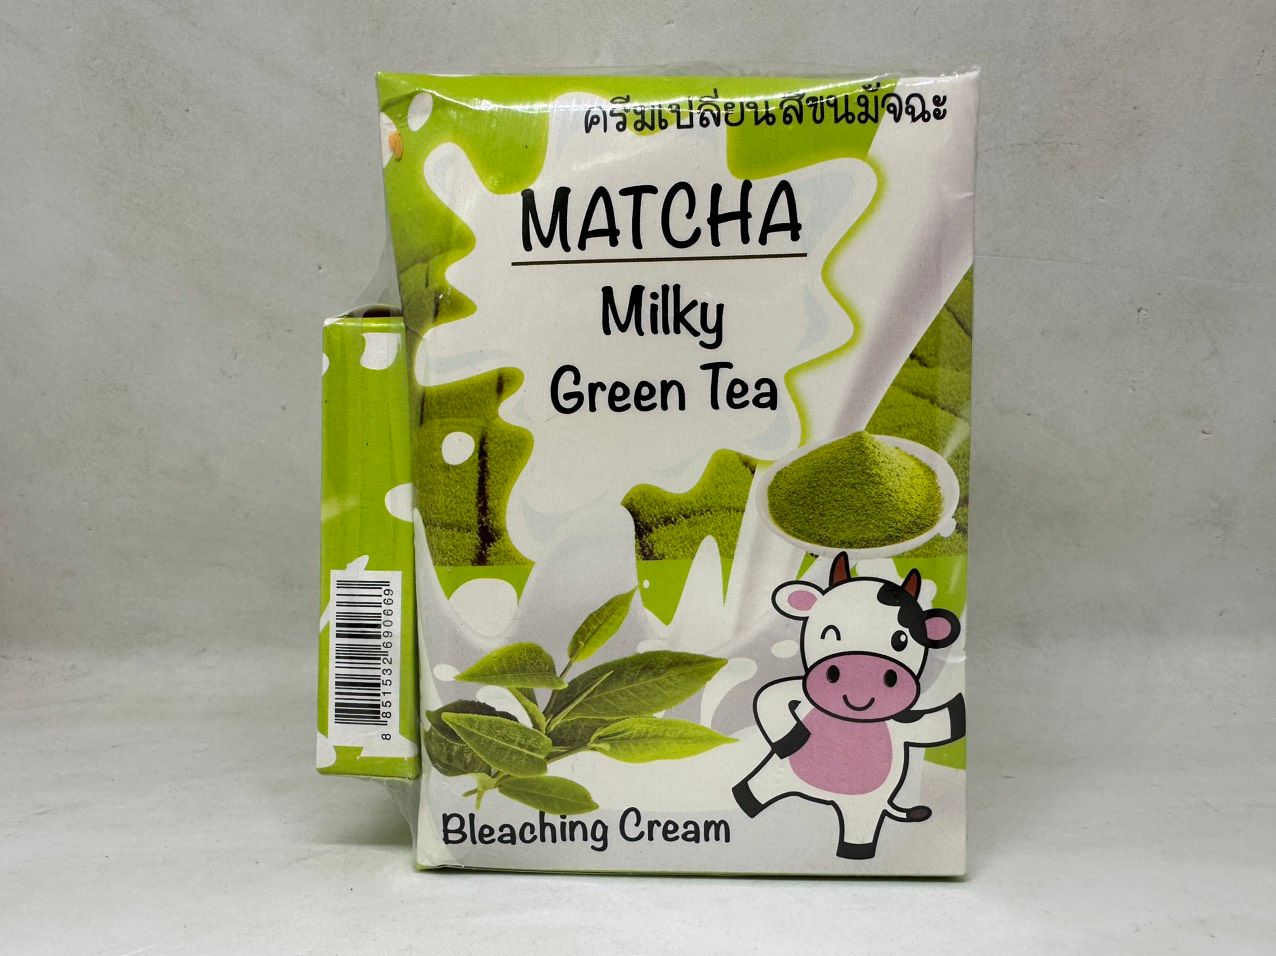  Bộ tắm trắng matcha milky green tea hương trà xanh hàng nội địa chính hãng thái lan 